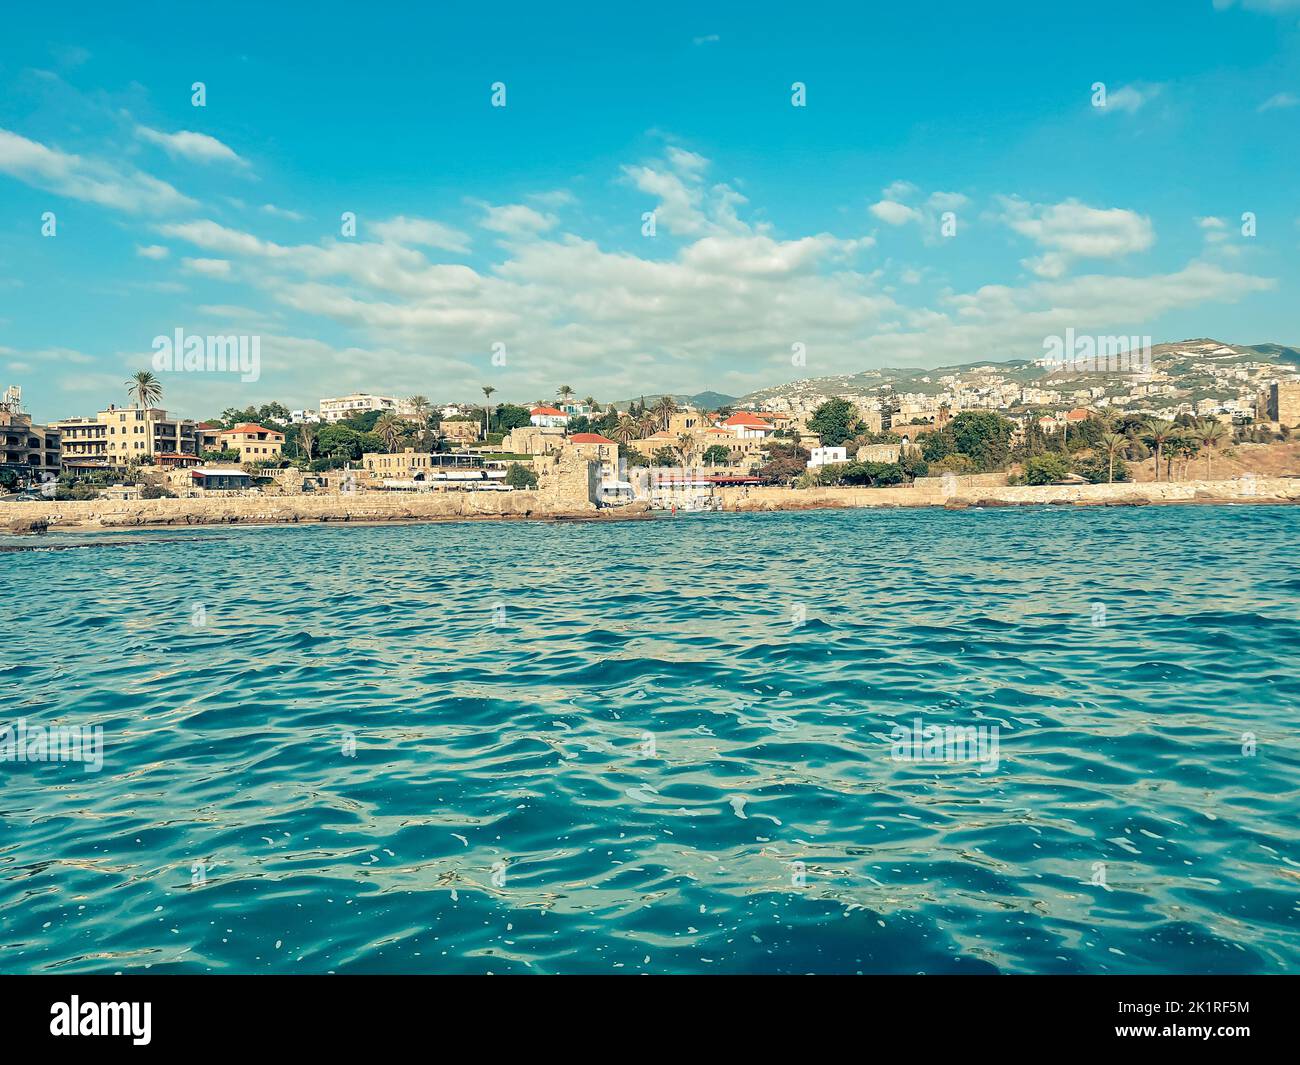 Vista de la famosa e histórica ciudad costera mediterránea: Byblos, Líbano - Atracciones Turísticas de Byblos con restaurantes y barcos en Líbano - vista f Foto de stock